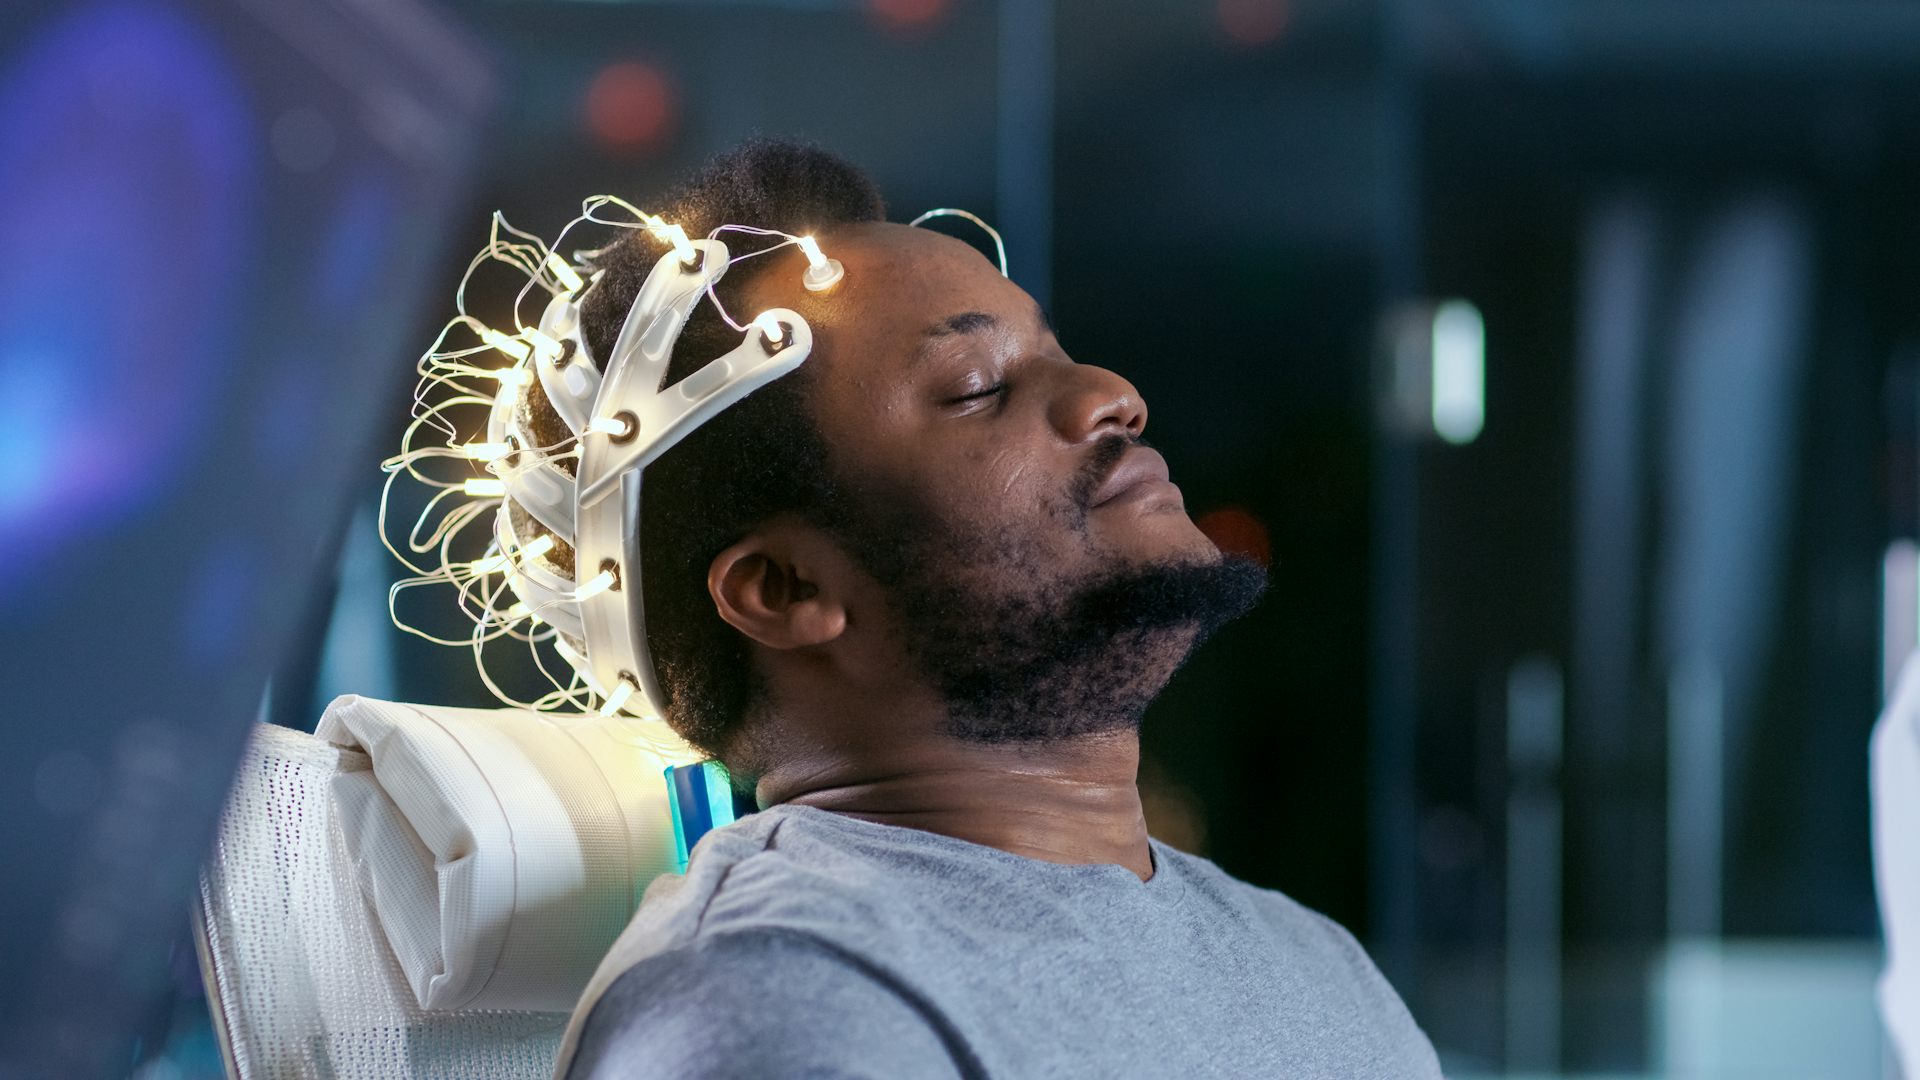 After brain. Аппарат для чтения мыслей. Нейроинтерфейс в голову. Шлем для считывания мозга. Шлем для читания мыслей.